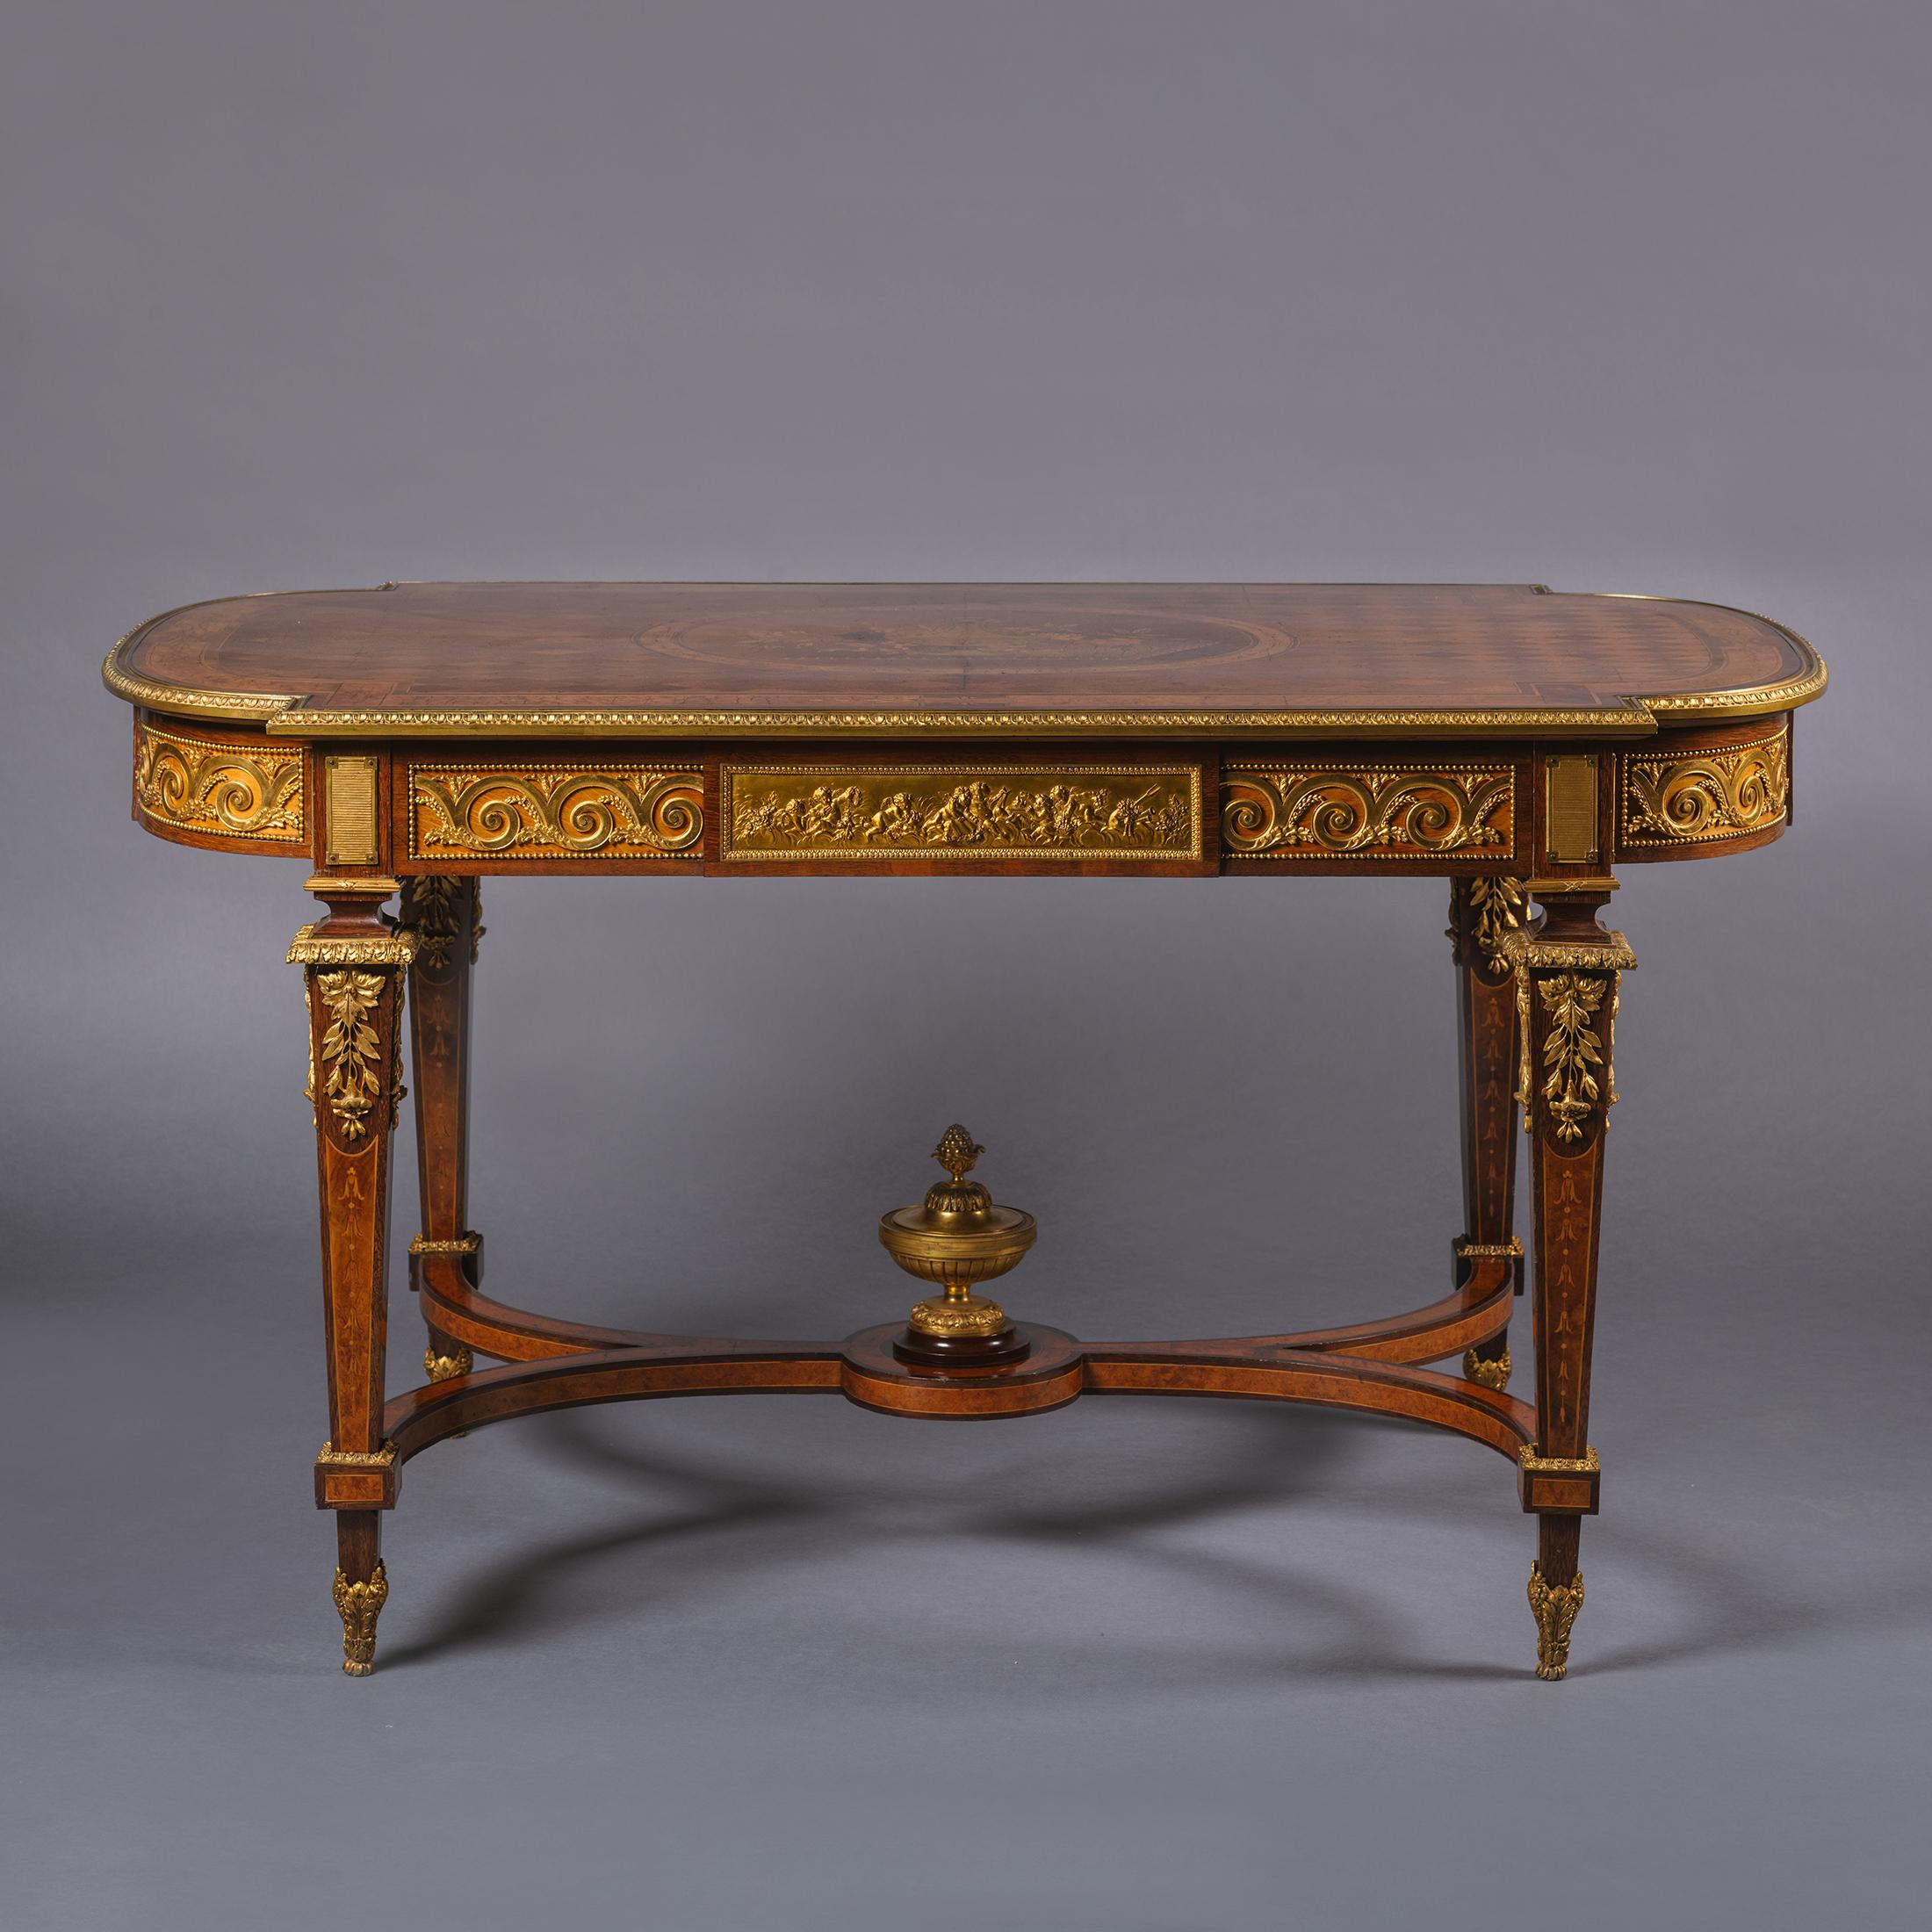 Table centrale de style Louis XVI en bronze doré et marqueterie.

Cette impressionnante table centrale est magnifiquement enrichie de montures en cuivre doré. Le plateau présente un fond en parquet à motif de losange entourant un panneau ovale